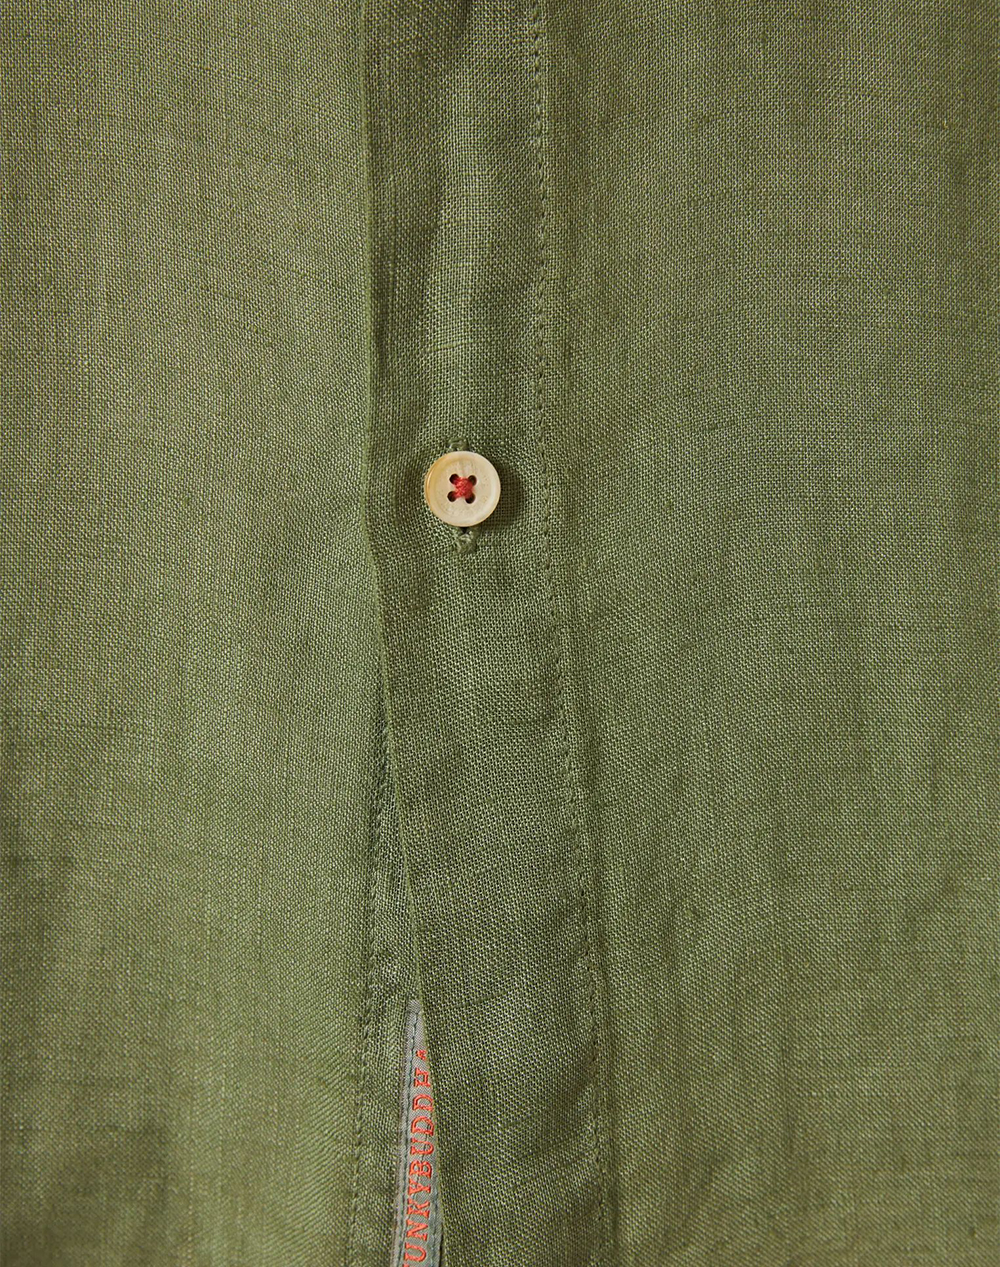 FUNKY BUDDHA Garment dyed košile s krátkym rukavem